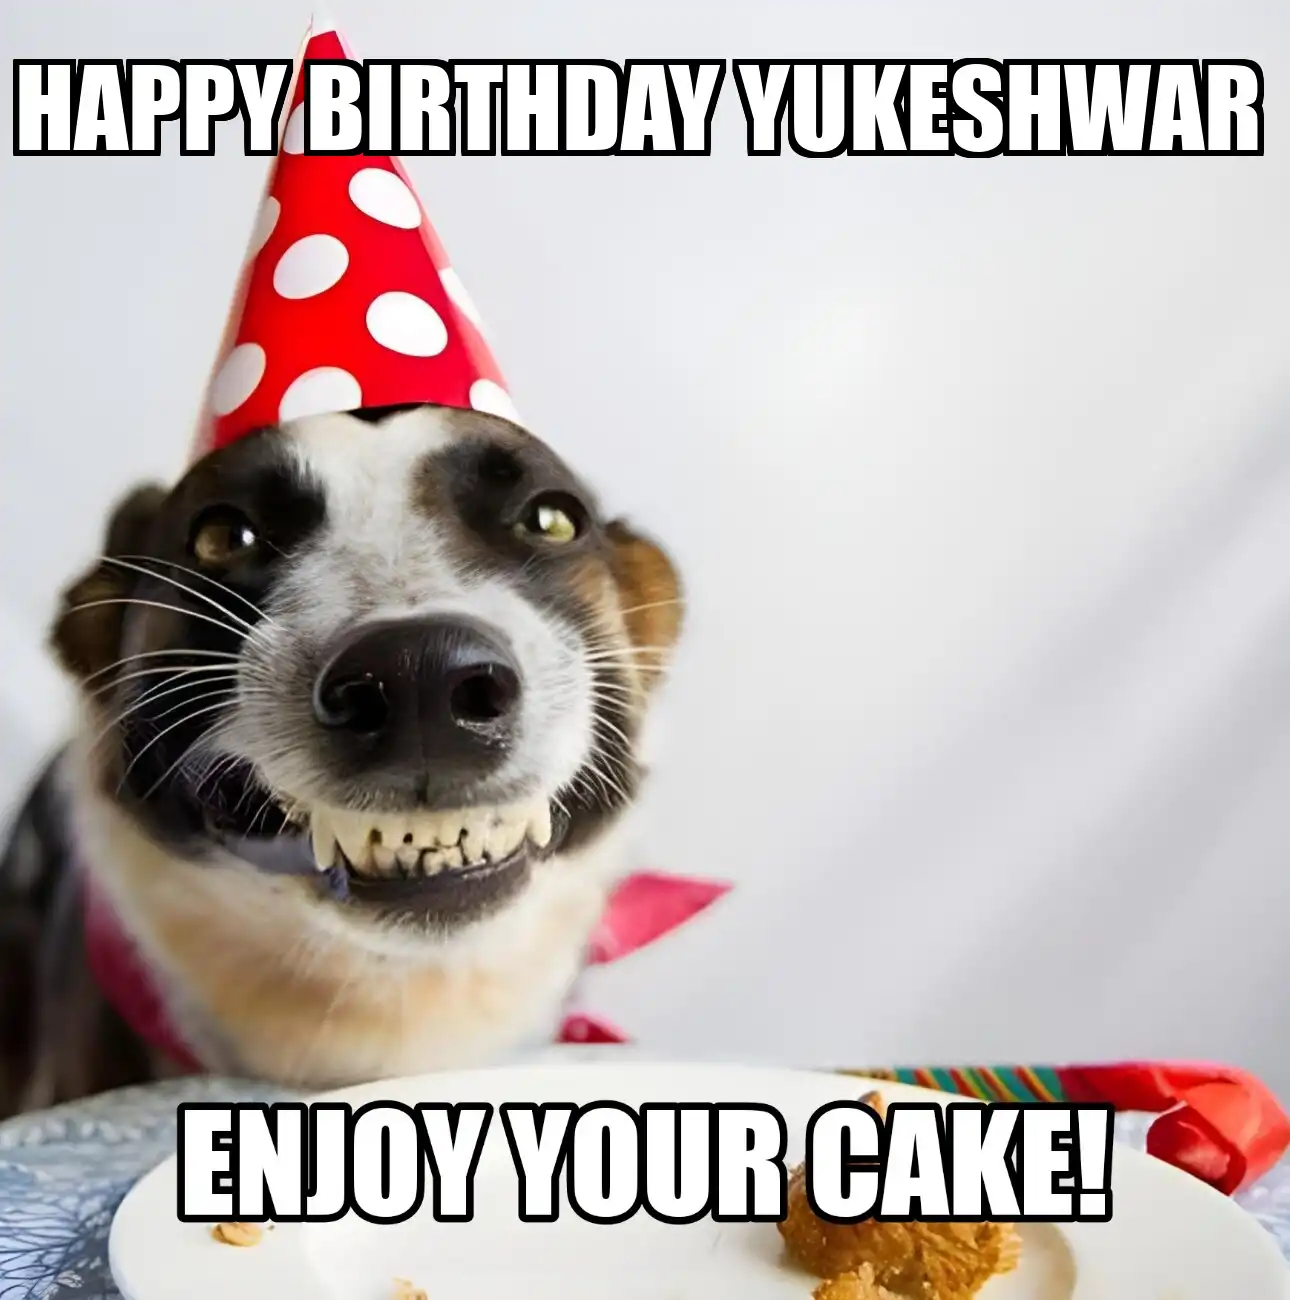 Happy Birthday Yukeshwar Enjoy Your Cake Dog Meme